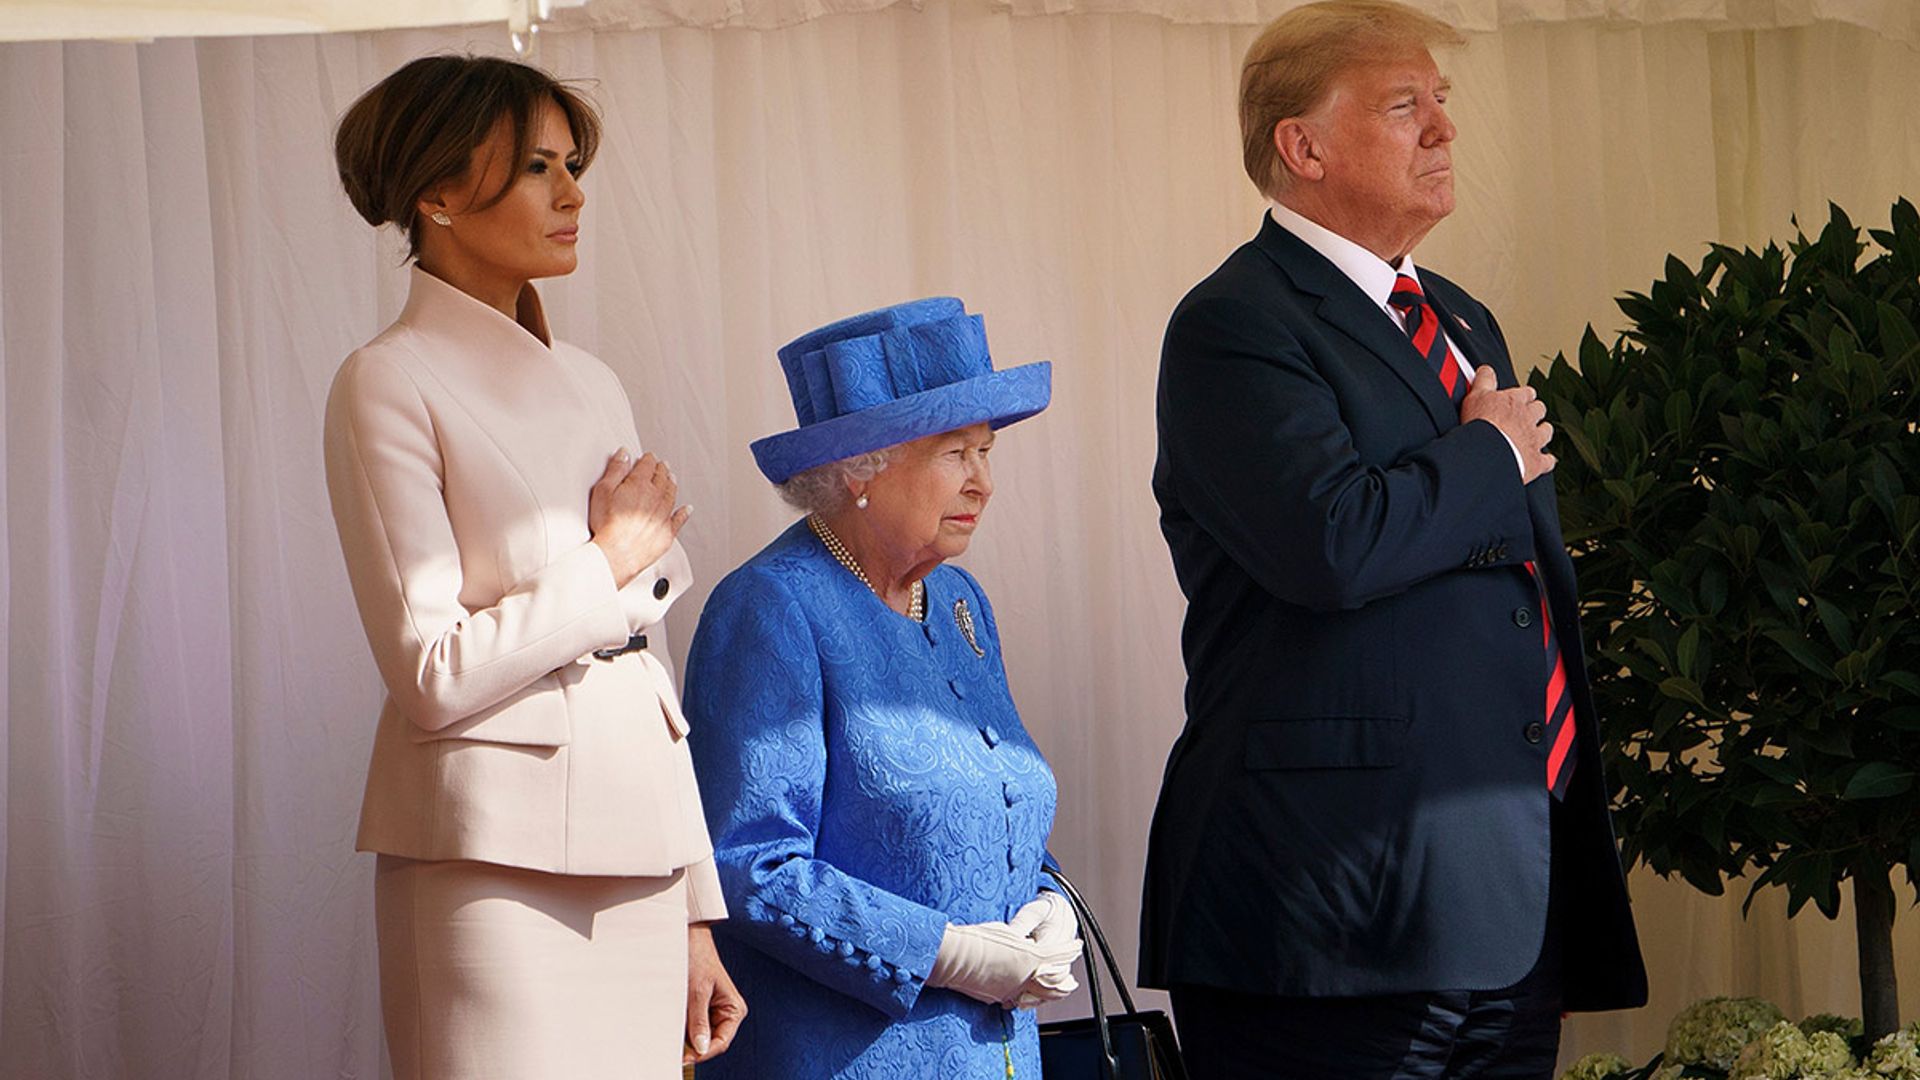 trumps meeting the queen